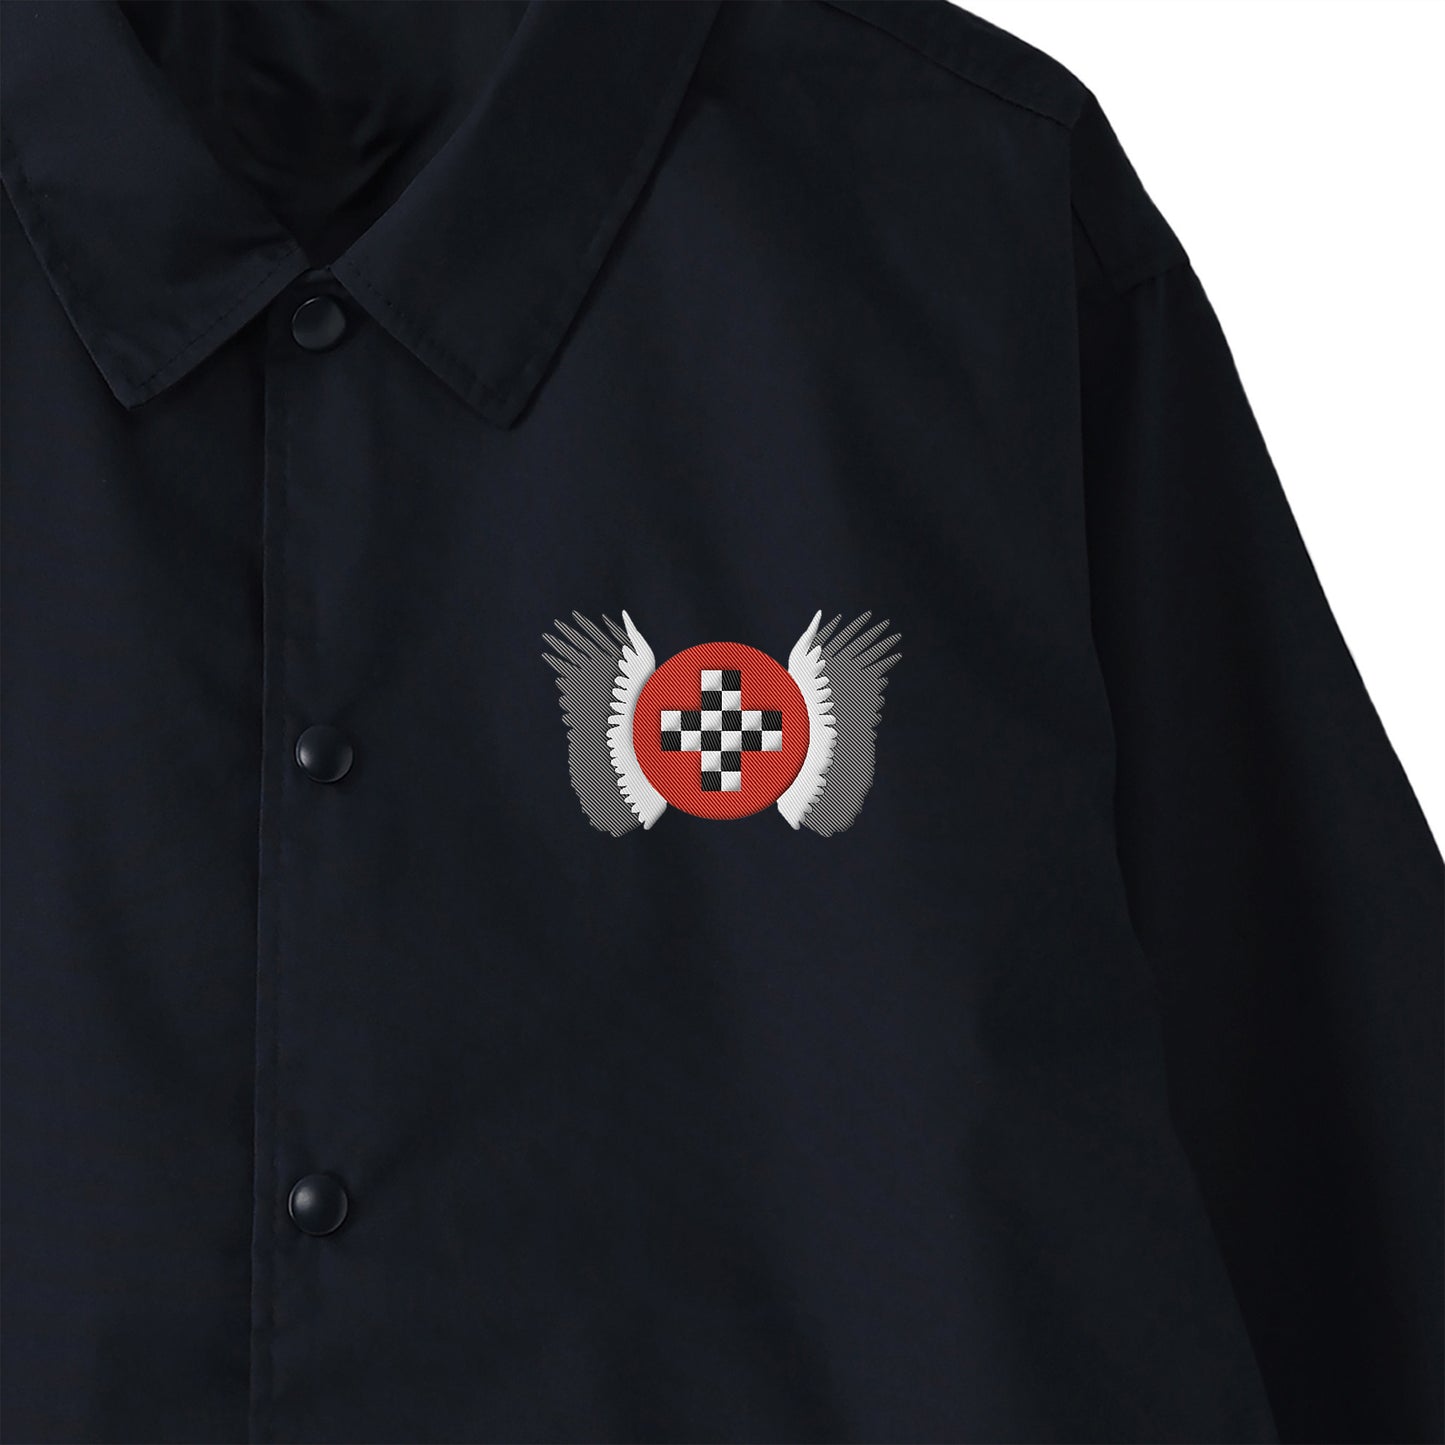 「架空のレーシングチーム・エンブレム、2色の翼」刺繍コーチジャケット